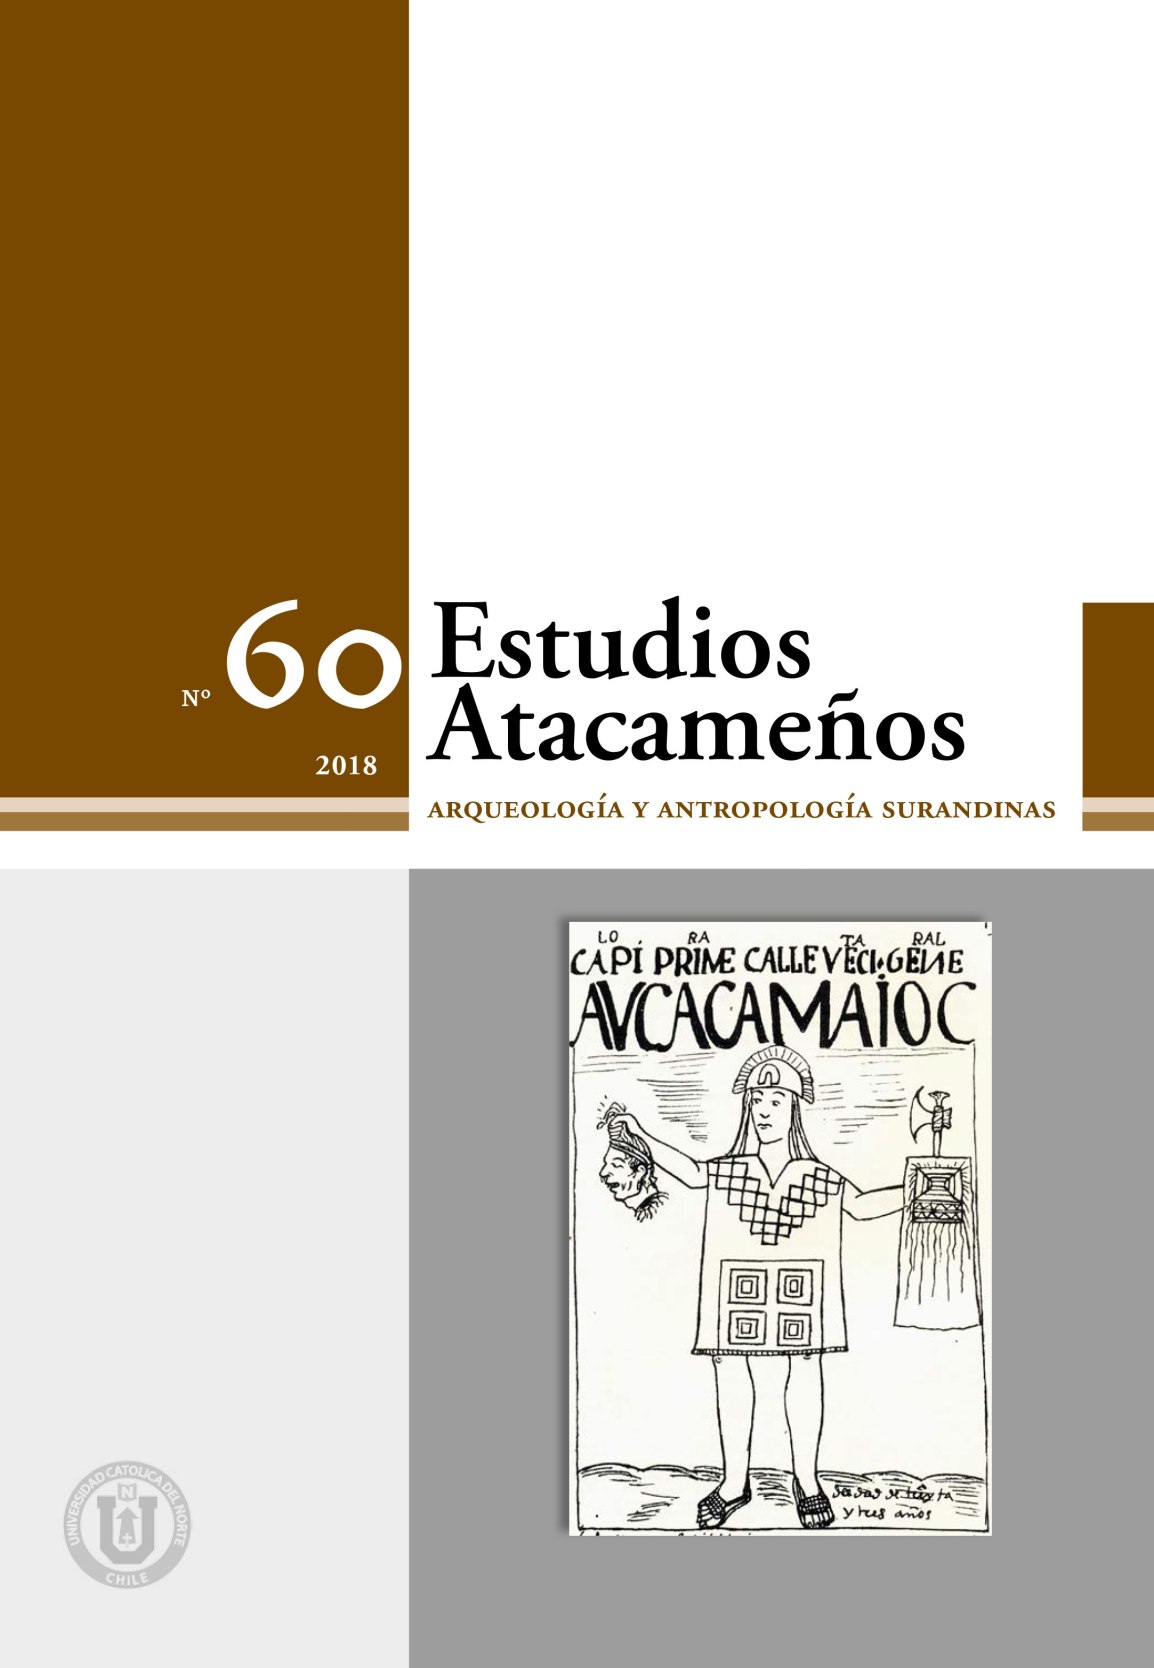 Memorias dolorosas, memorias del dolor: reflexiones y debates mapuche sobre la restitución de restos humanos mapuche-tehuelche en la Patagonia argentina